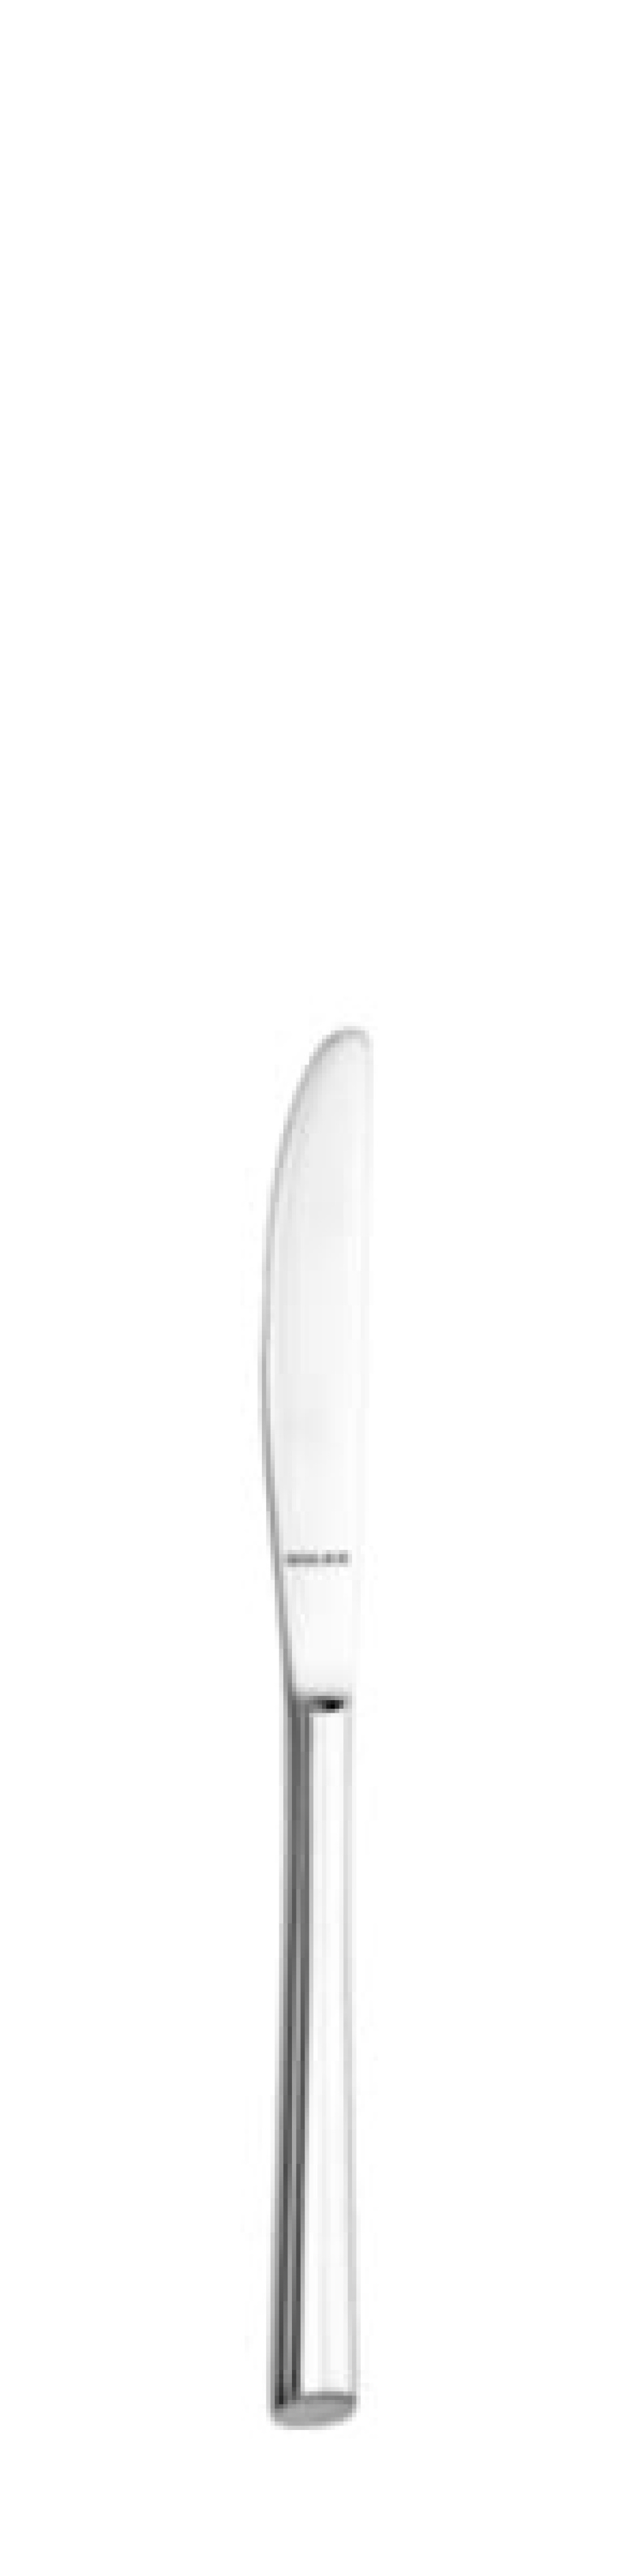 Nóż do masła Laura 174 mm - Solex w grupie Nakrycie stołu / Sztućce / Noże do masła w The Kitchen Lab (1284-21496)